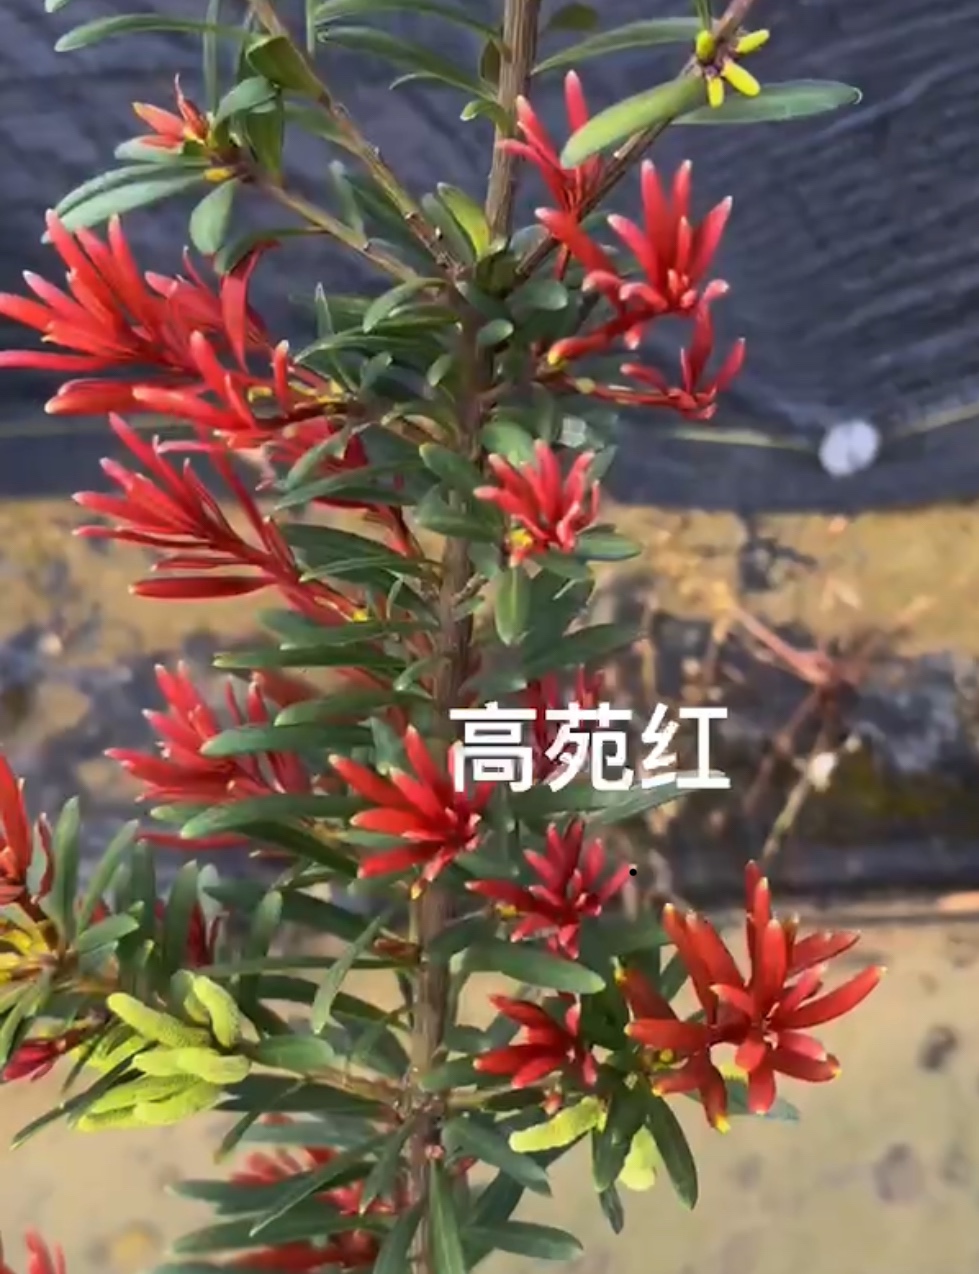 高苑红罗汉松原生扦插杯苗，最红芽四季出新芽就红中叶公树品种